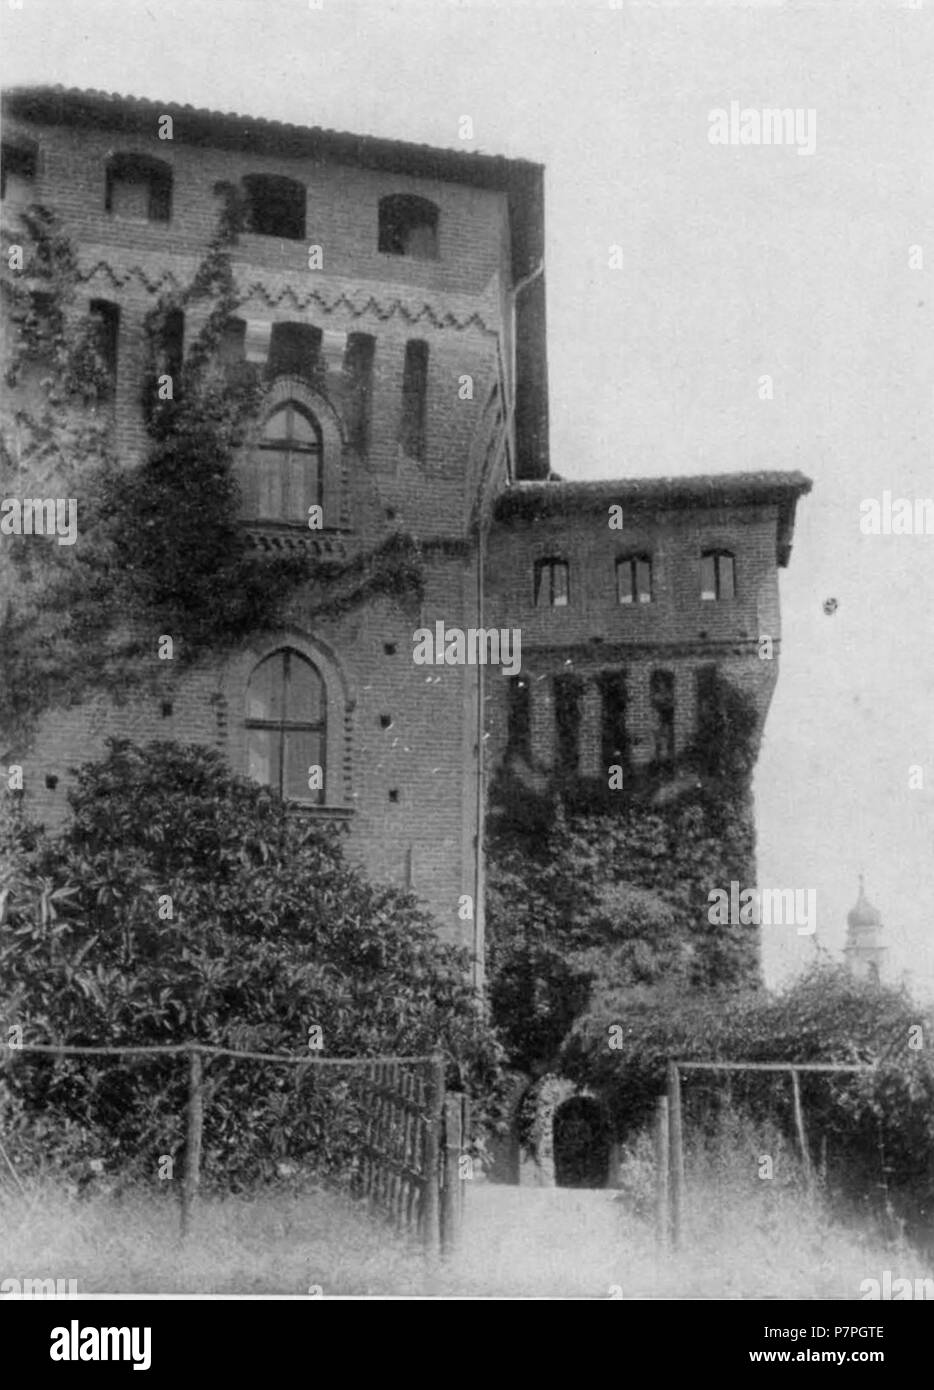 Italiano: castello di Barengo, porta primitiva . prima di 1937 158 Fig 116, castello di Barengo, porta primitiva, p202, foto nigra, nigra il novarese copia copia Foto Stock